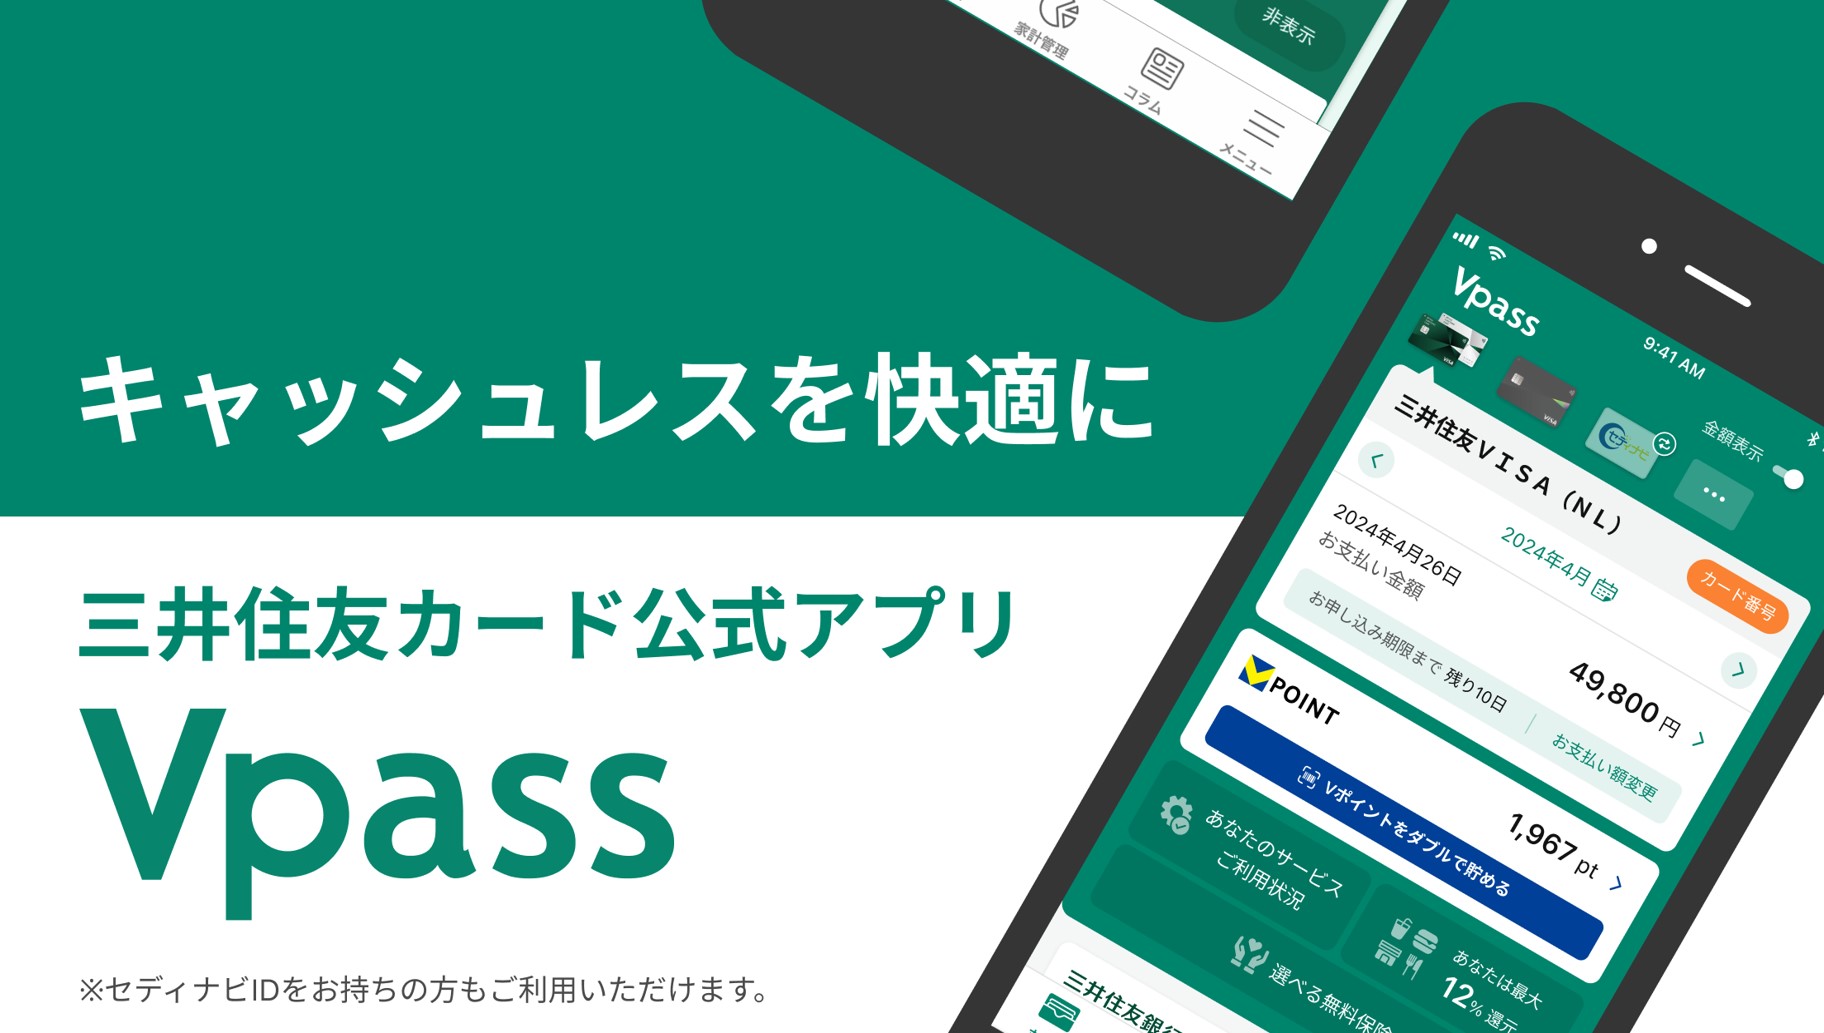 キャッシュレスを快適に 三井住友カード公式アプリ Vpass